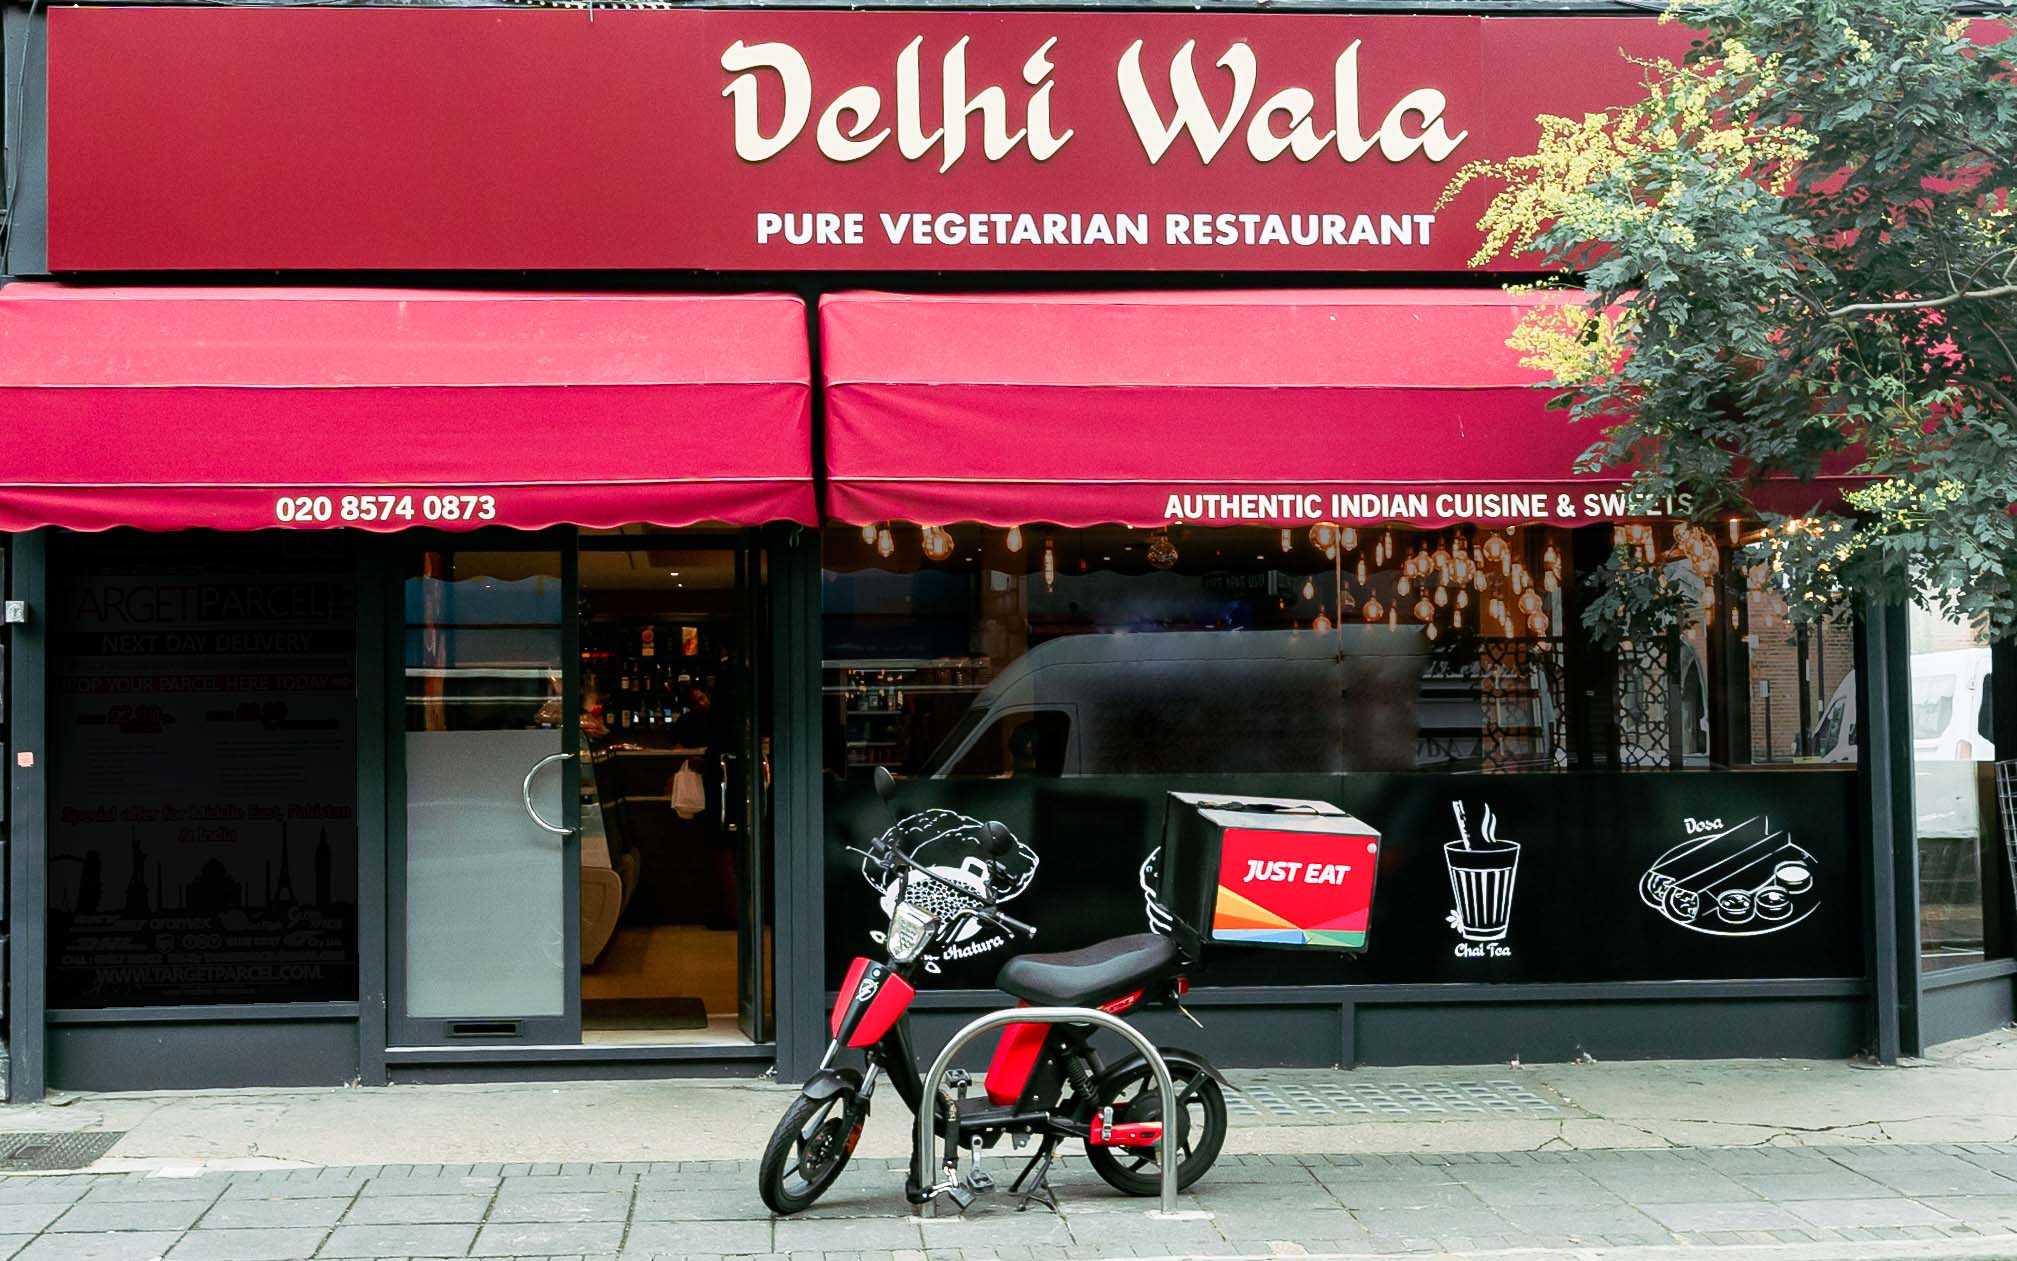 Delhi Wala restaurant